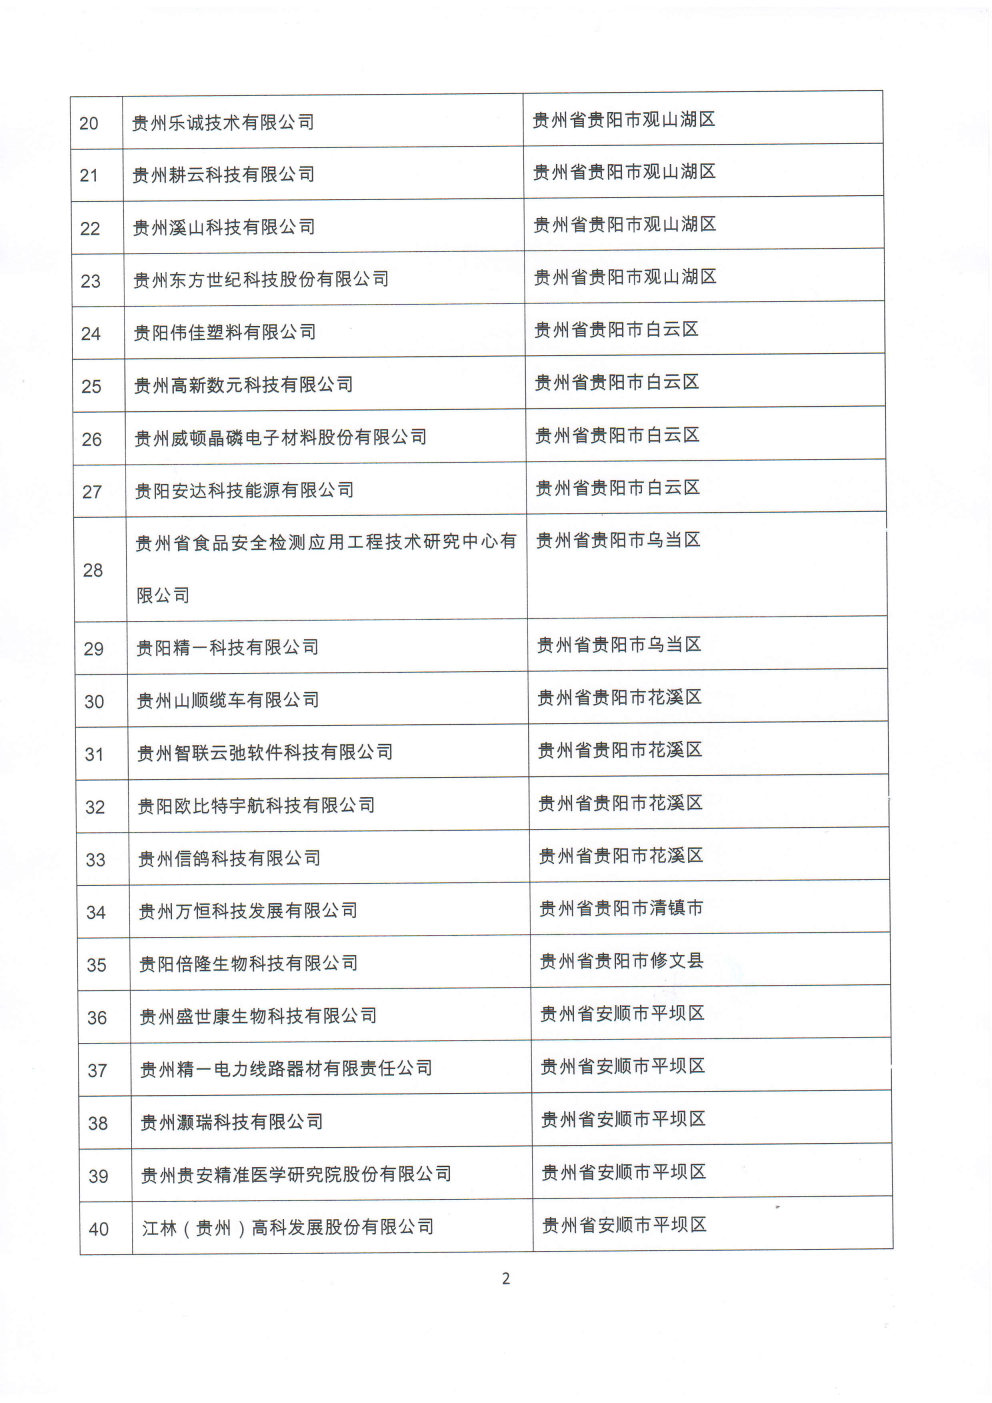 附件：贵州省2020年第三批拟入库科技型中小企业名单_Page2_Image1.jpg